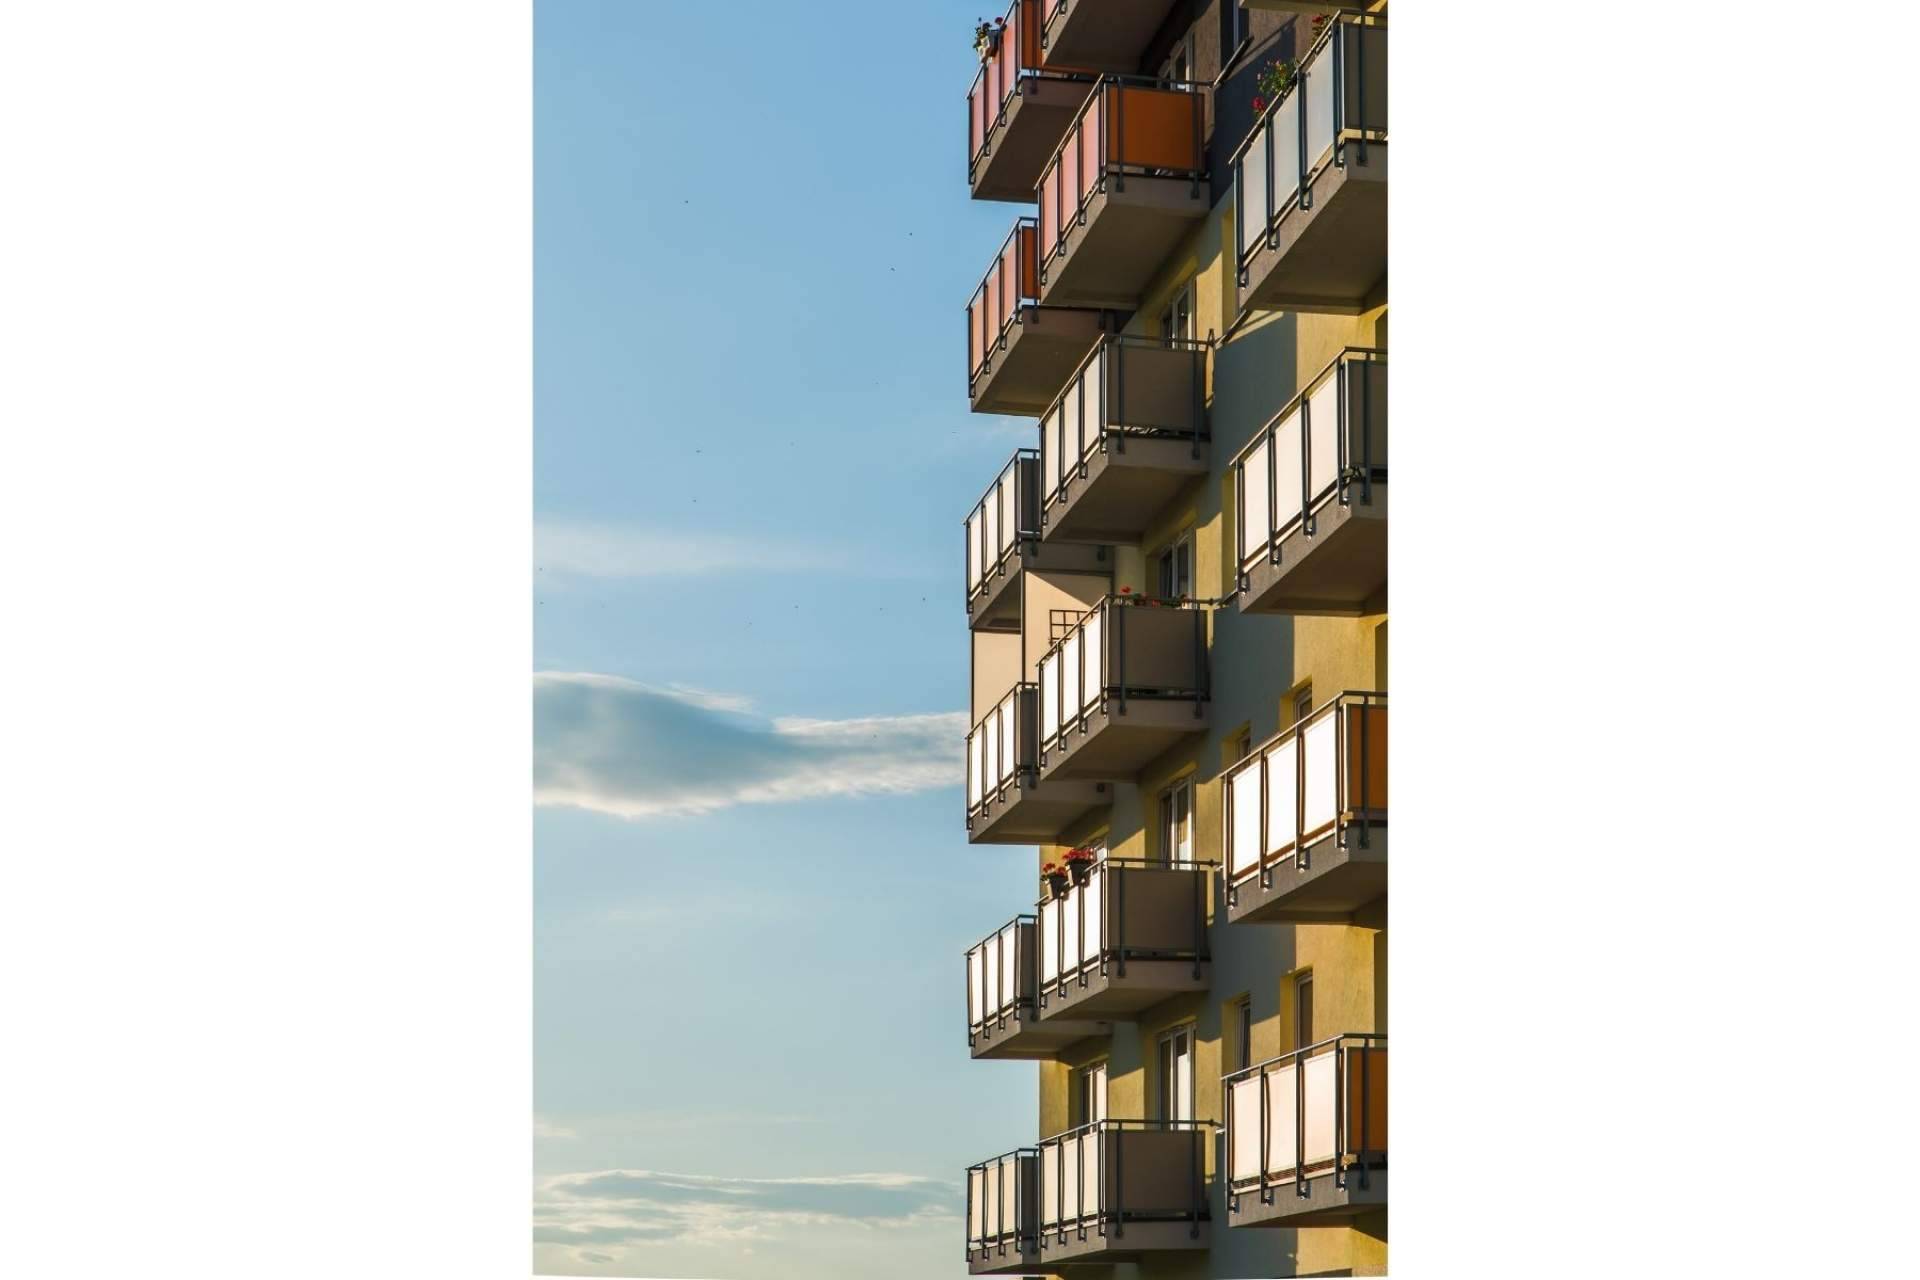 La venta de viviendas a nivel nacional y los principales aspectos a tener en cuenta, por SteraM Flats Torremolinos